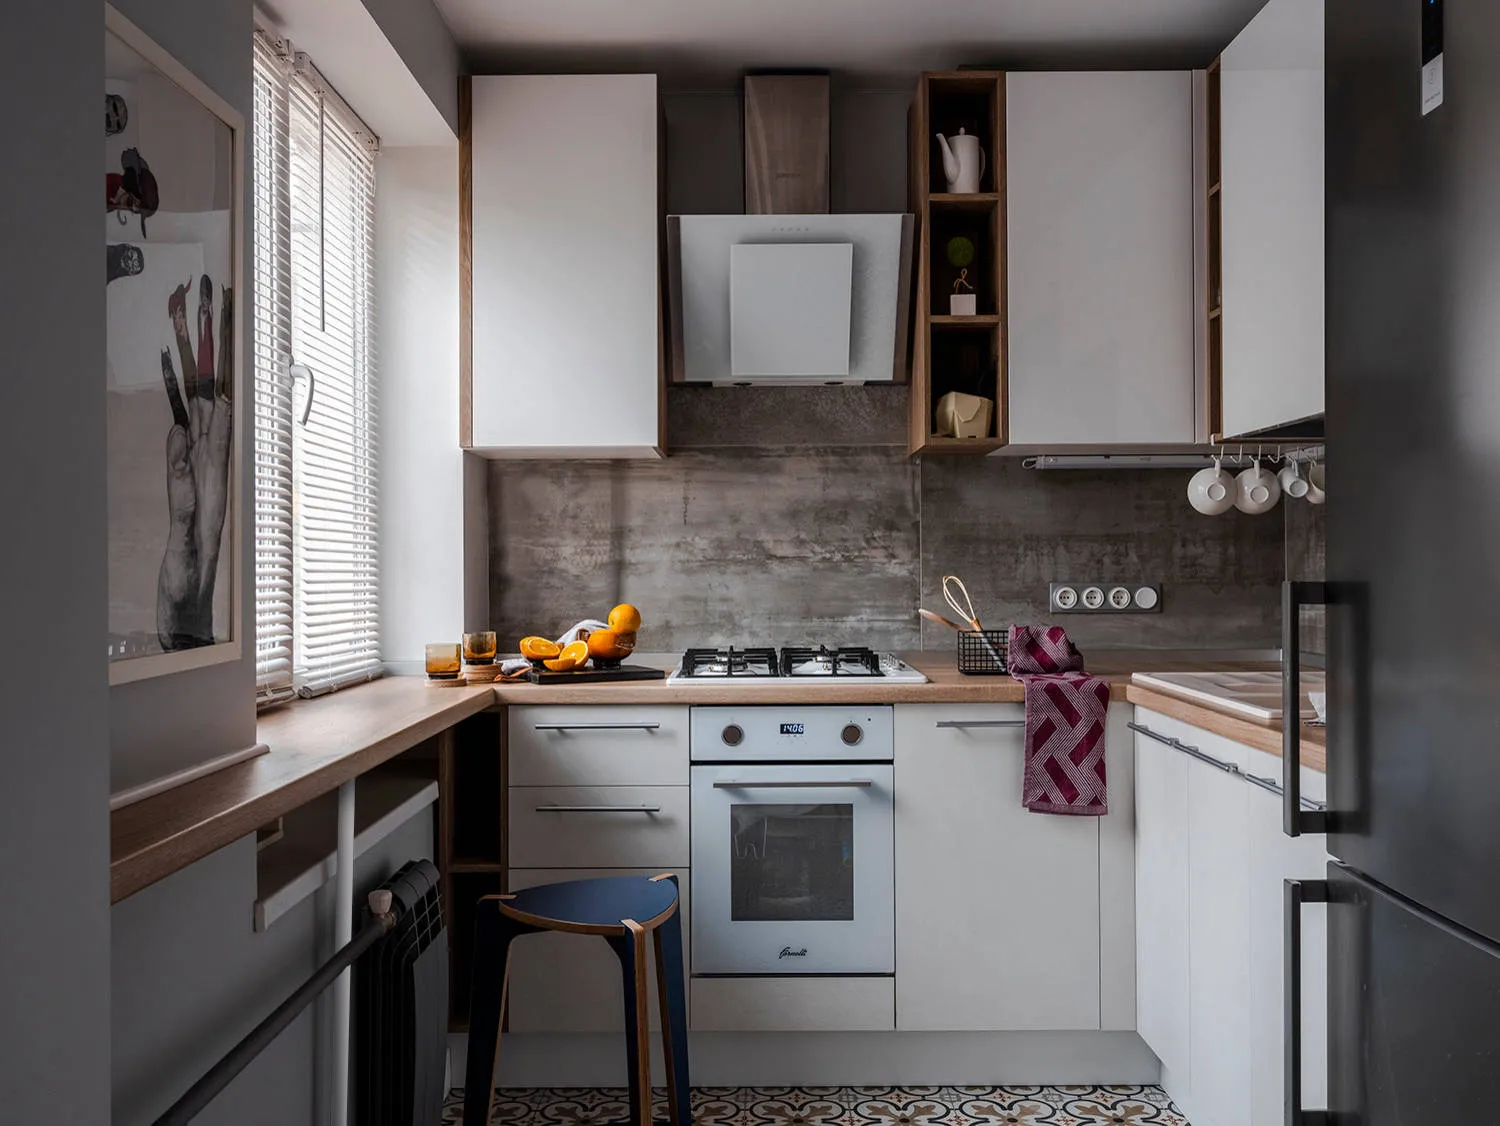 кухня площадью 6 квадратов с холодильником | Kitchen room design, House design, Kitchen room